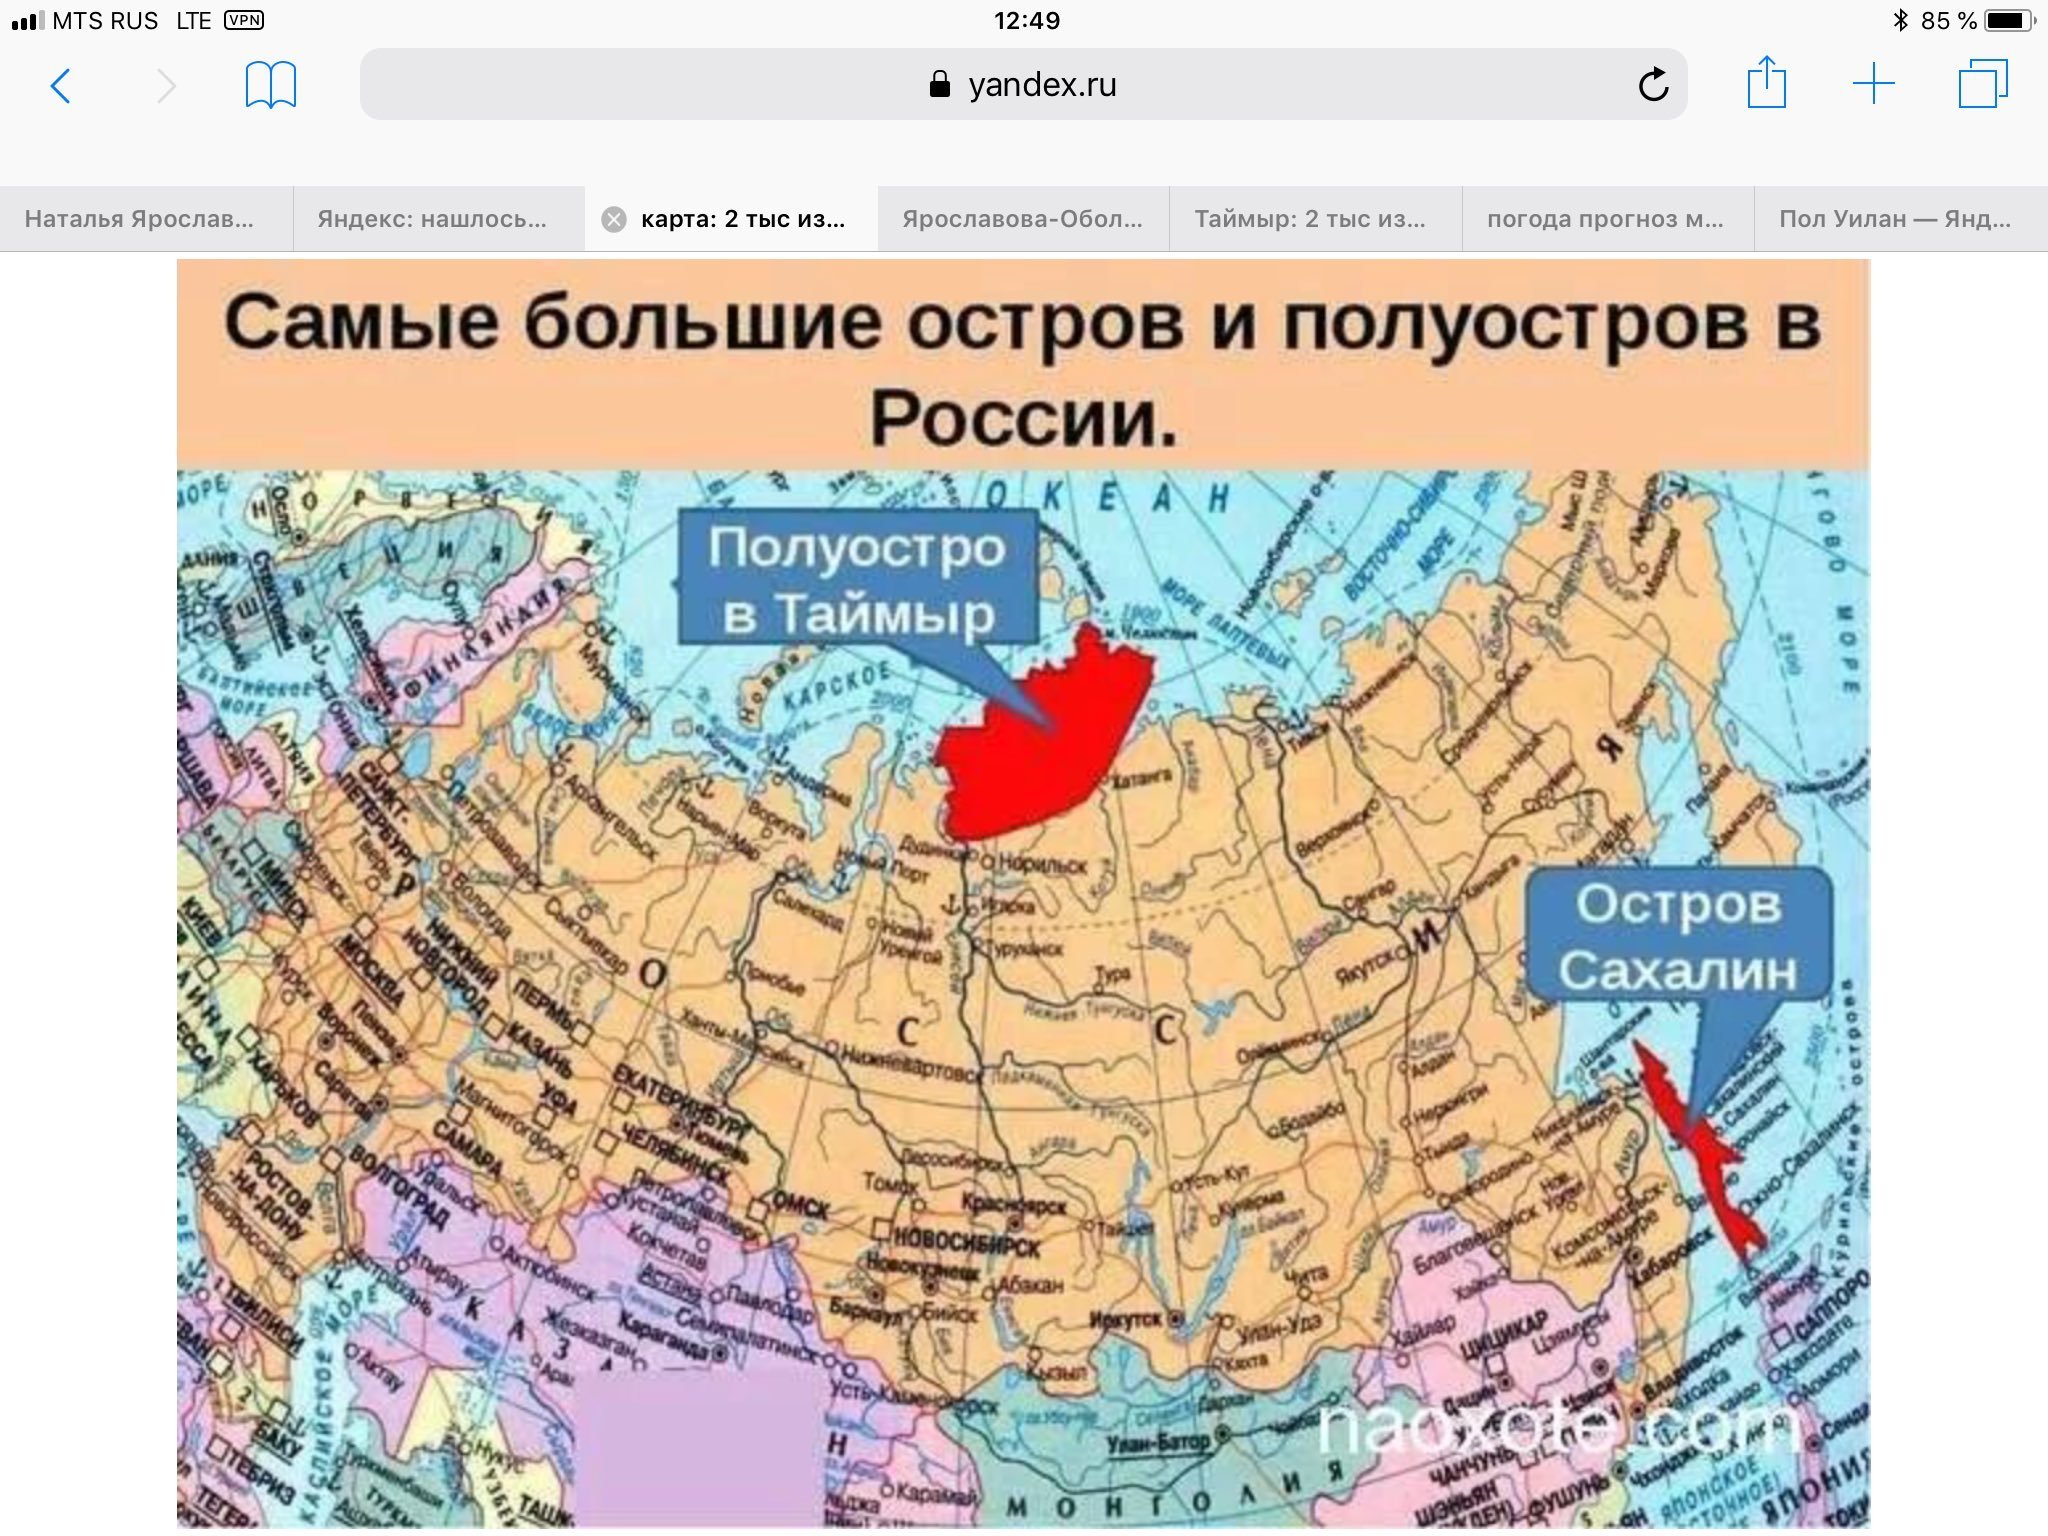 Северные озера россии на карте. Полуостров Таймыр физическая карта. Полуостров Таймыр на карте России. Полуостров Таймыр на карте.